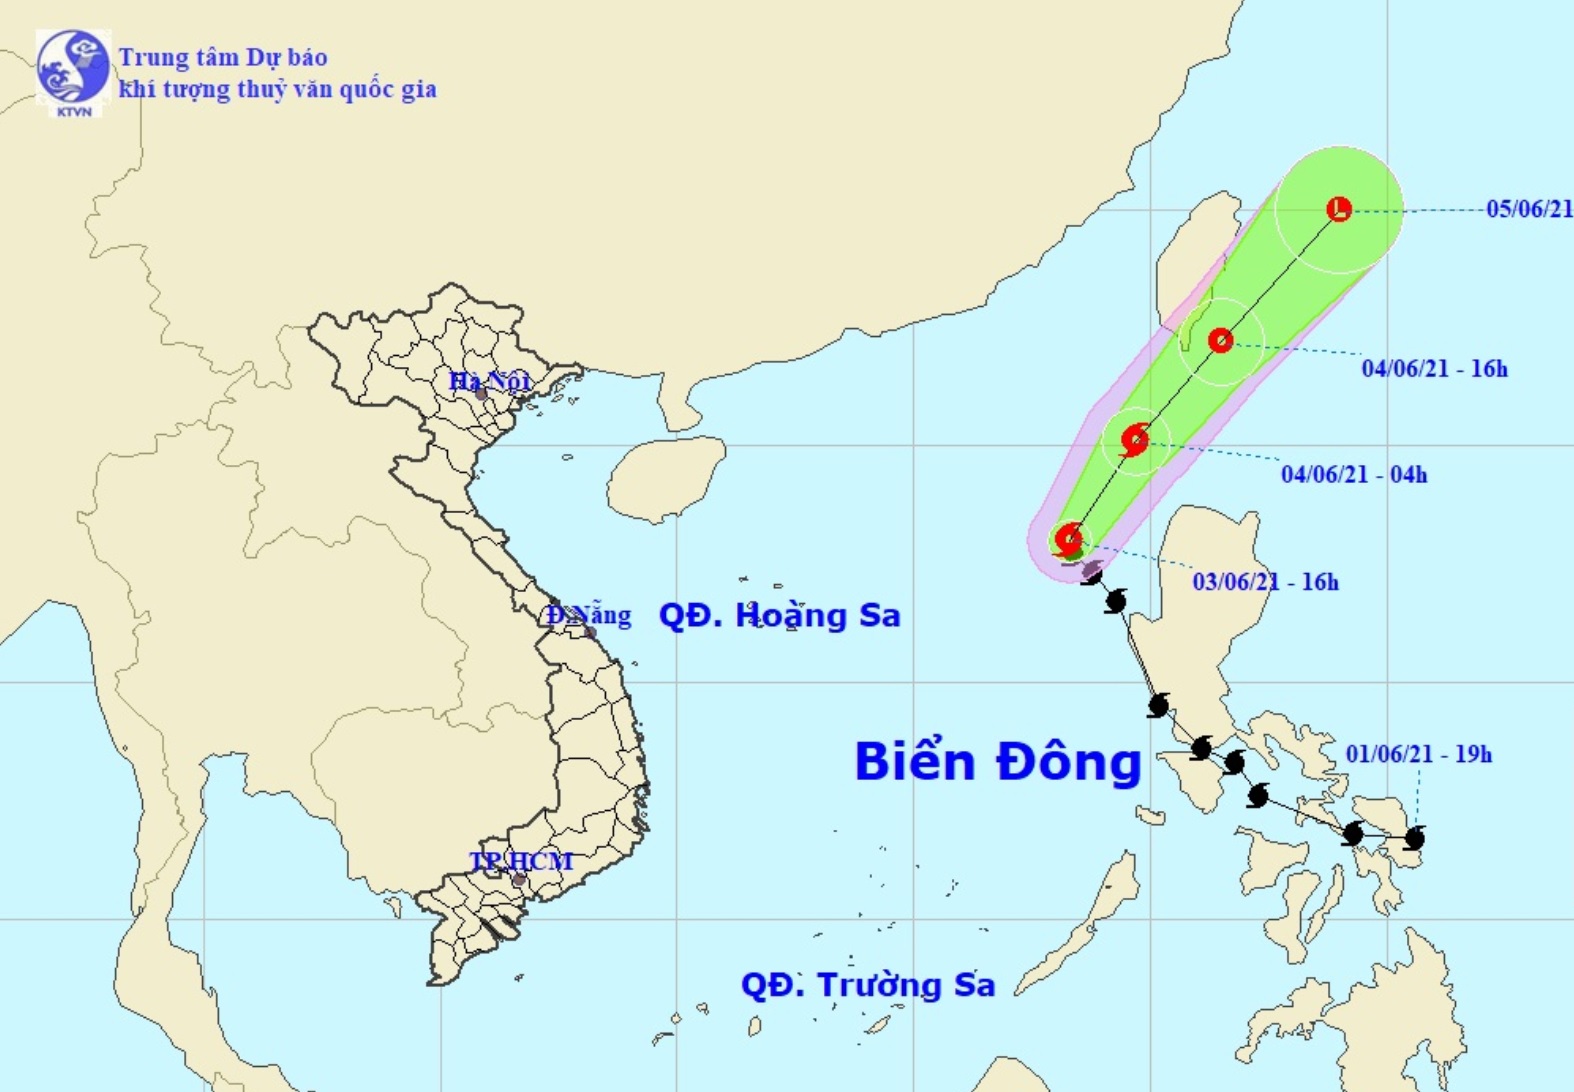 Vị trí và hướng di chuyển tiếp theo của bão số 1 Choi-wan. Ảnh: Trung tâm Dự báo KTTVQG.